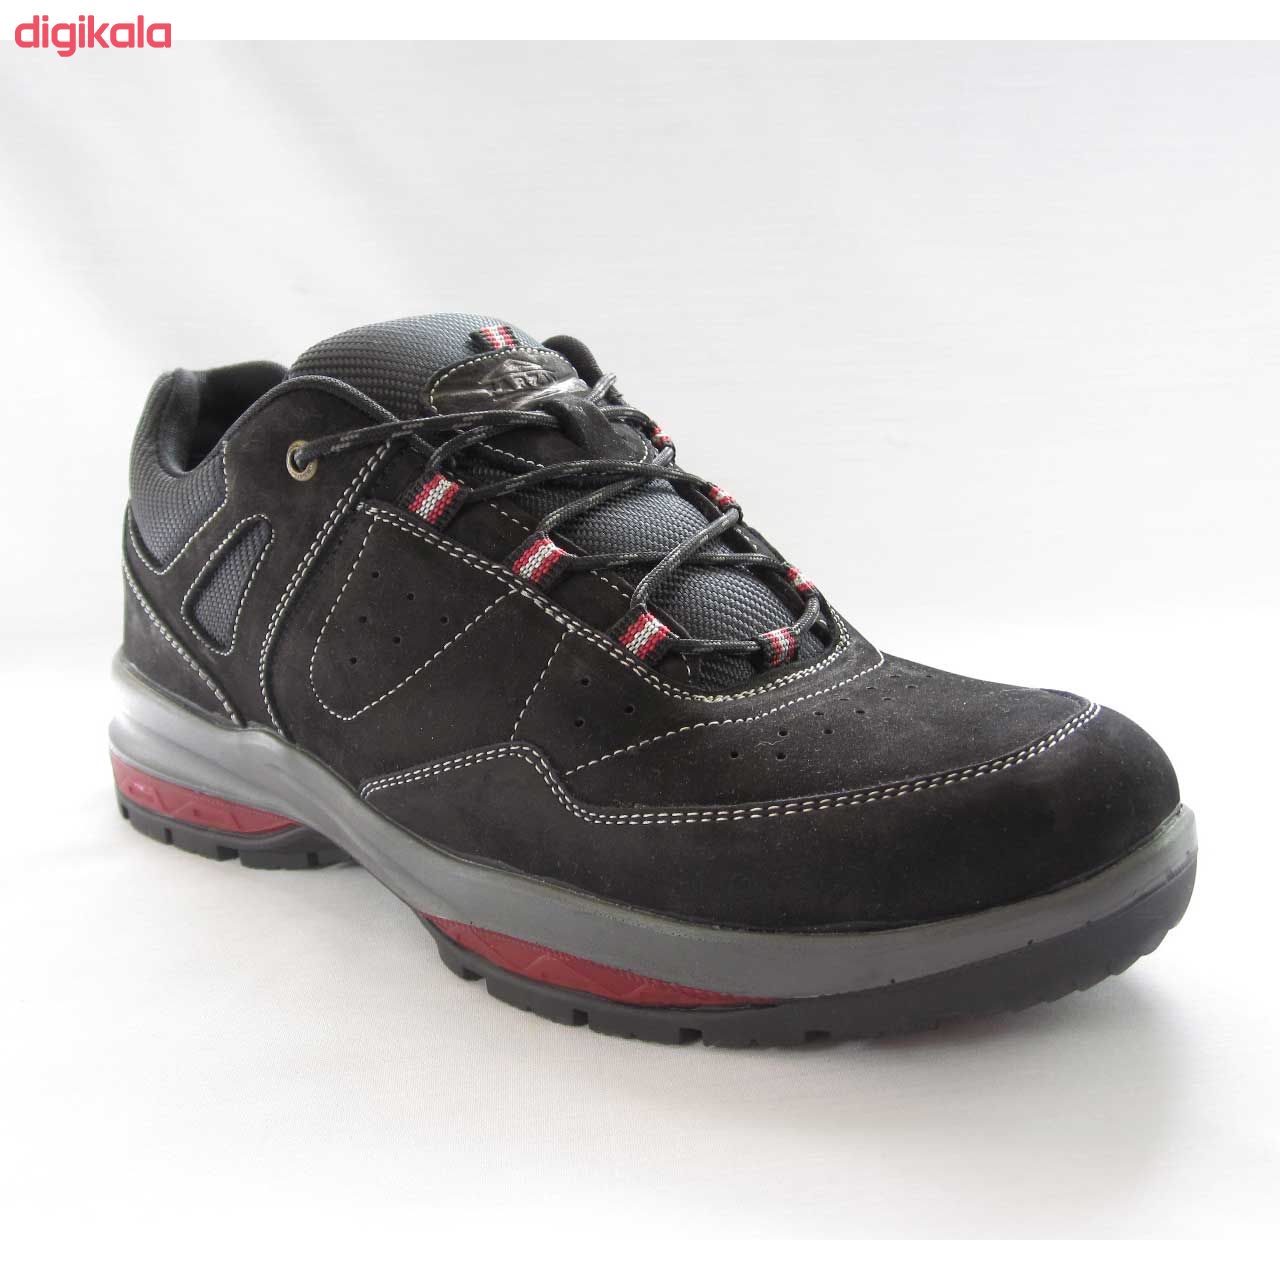  کفش مخصوص پیاده روی مردانه فرزین مدل Lexon کد 1259